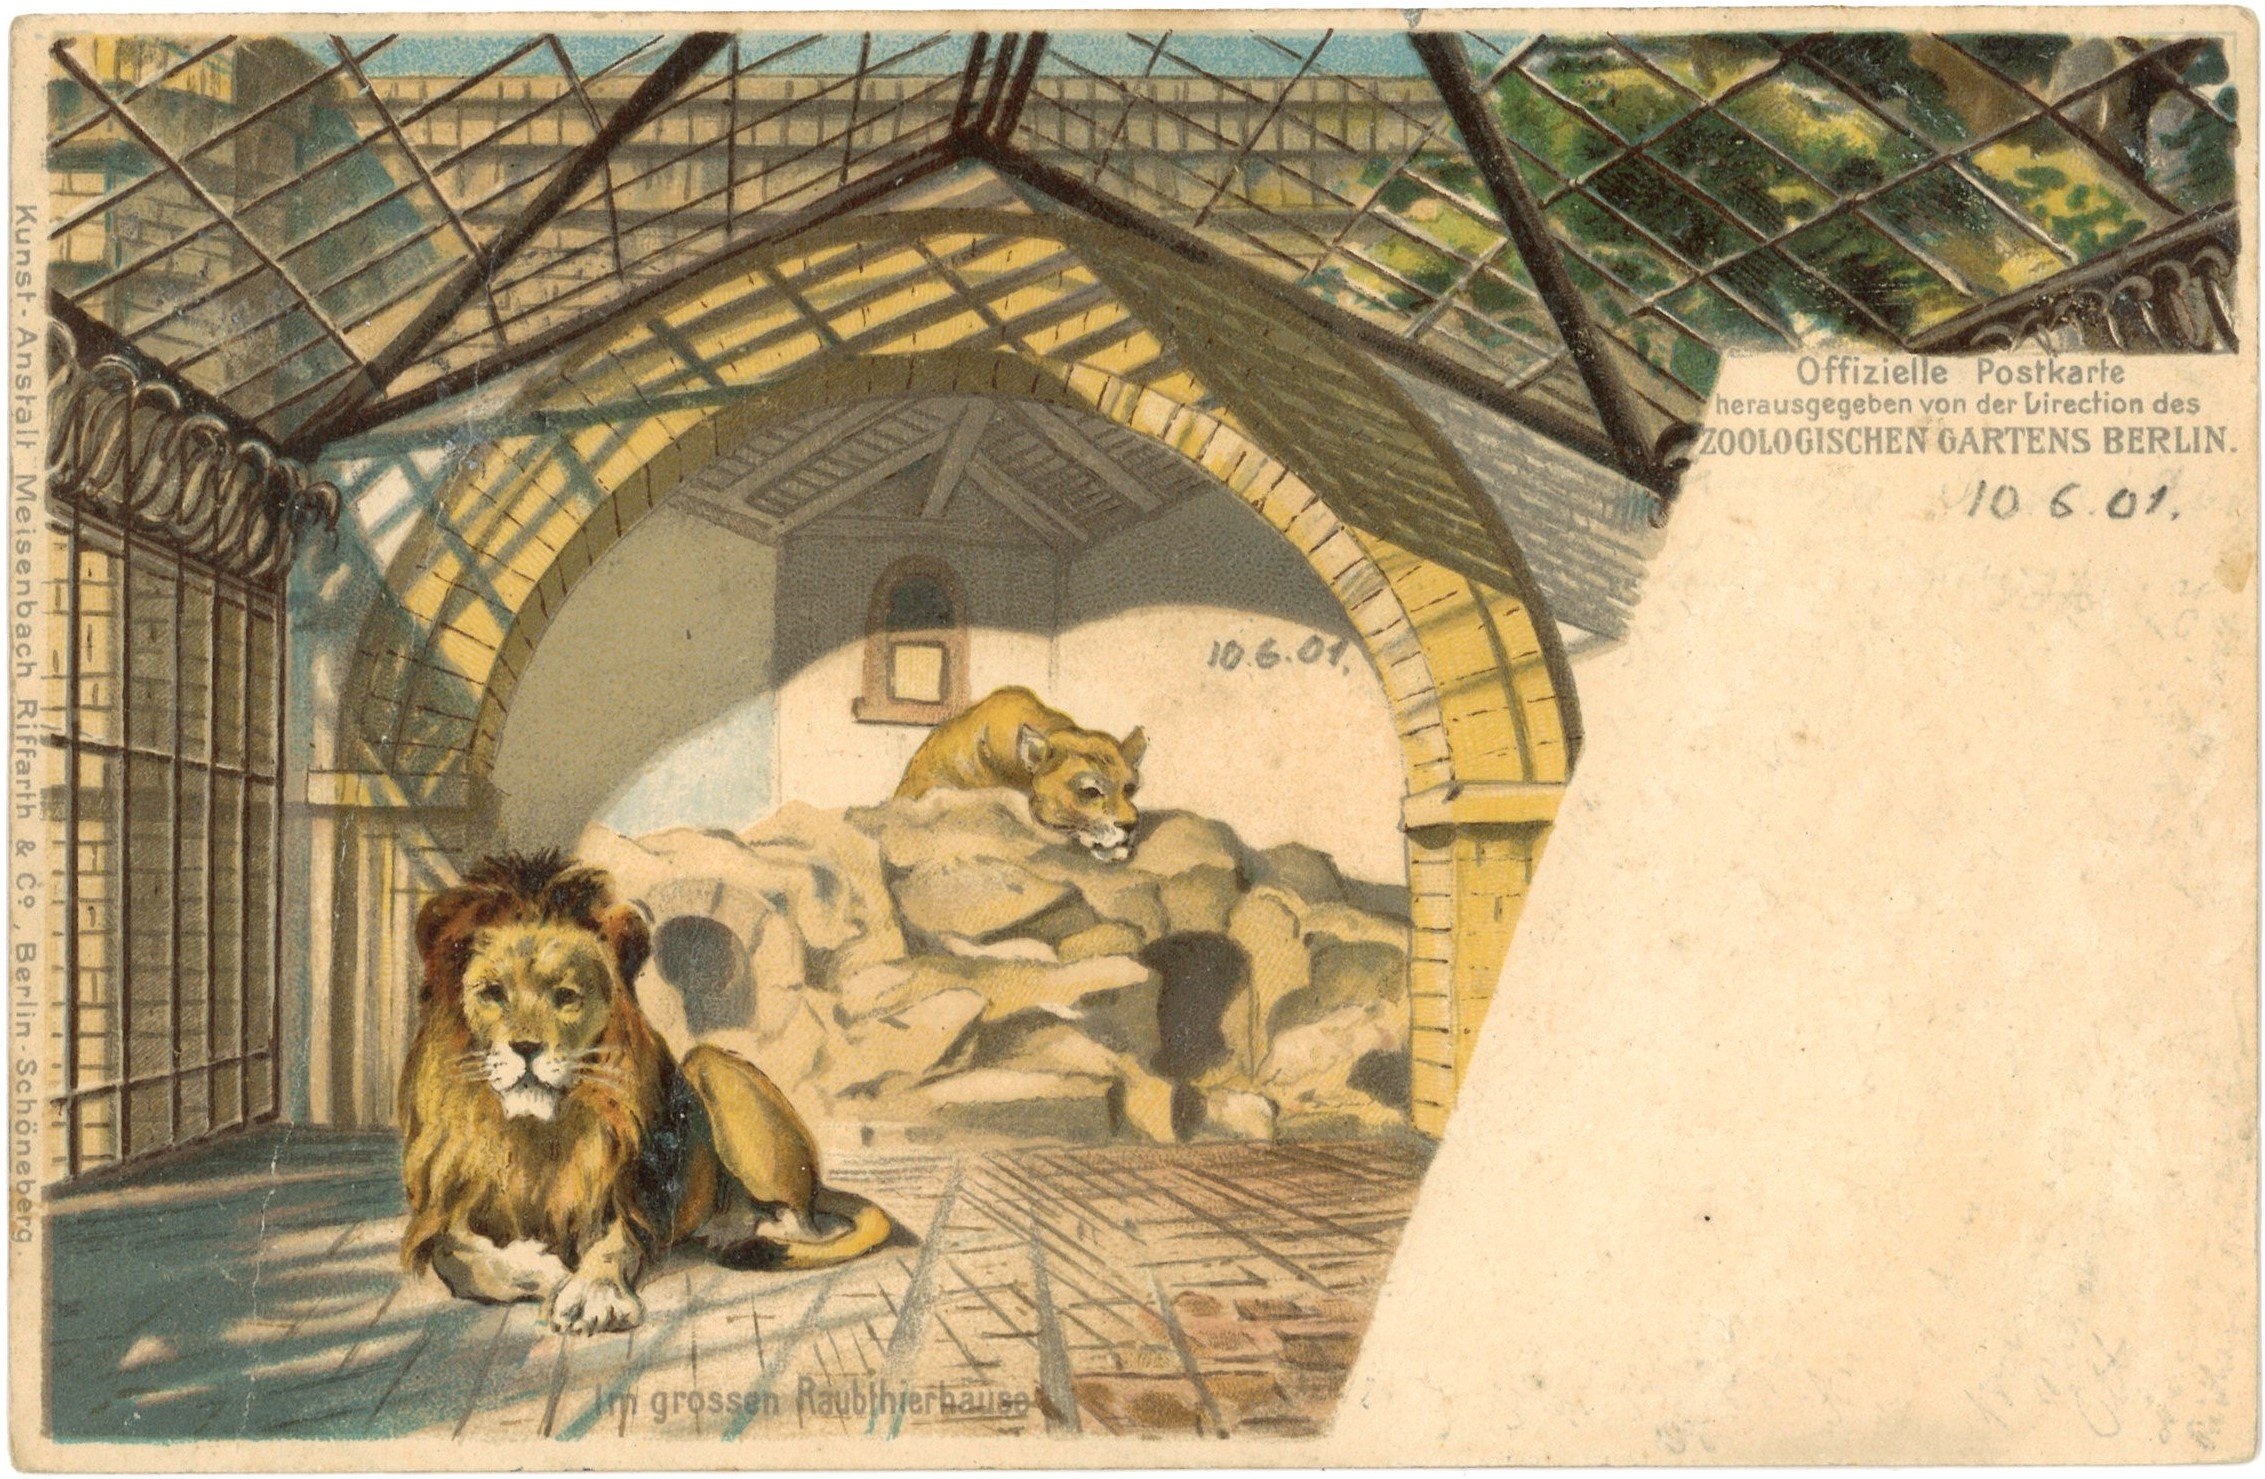 Berlin-Tiergarten: Große Raubtierhaus, Innenansicht eines Löwenkäfigs (Landesgeschichtliche Vereinigung für die Mark Brandenburg e.V. CC BY)